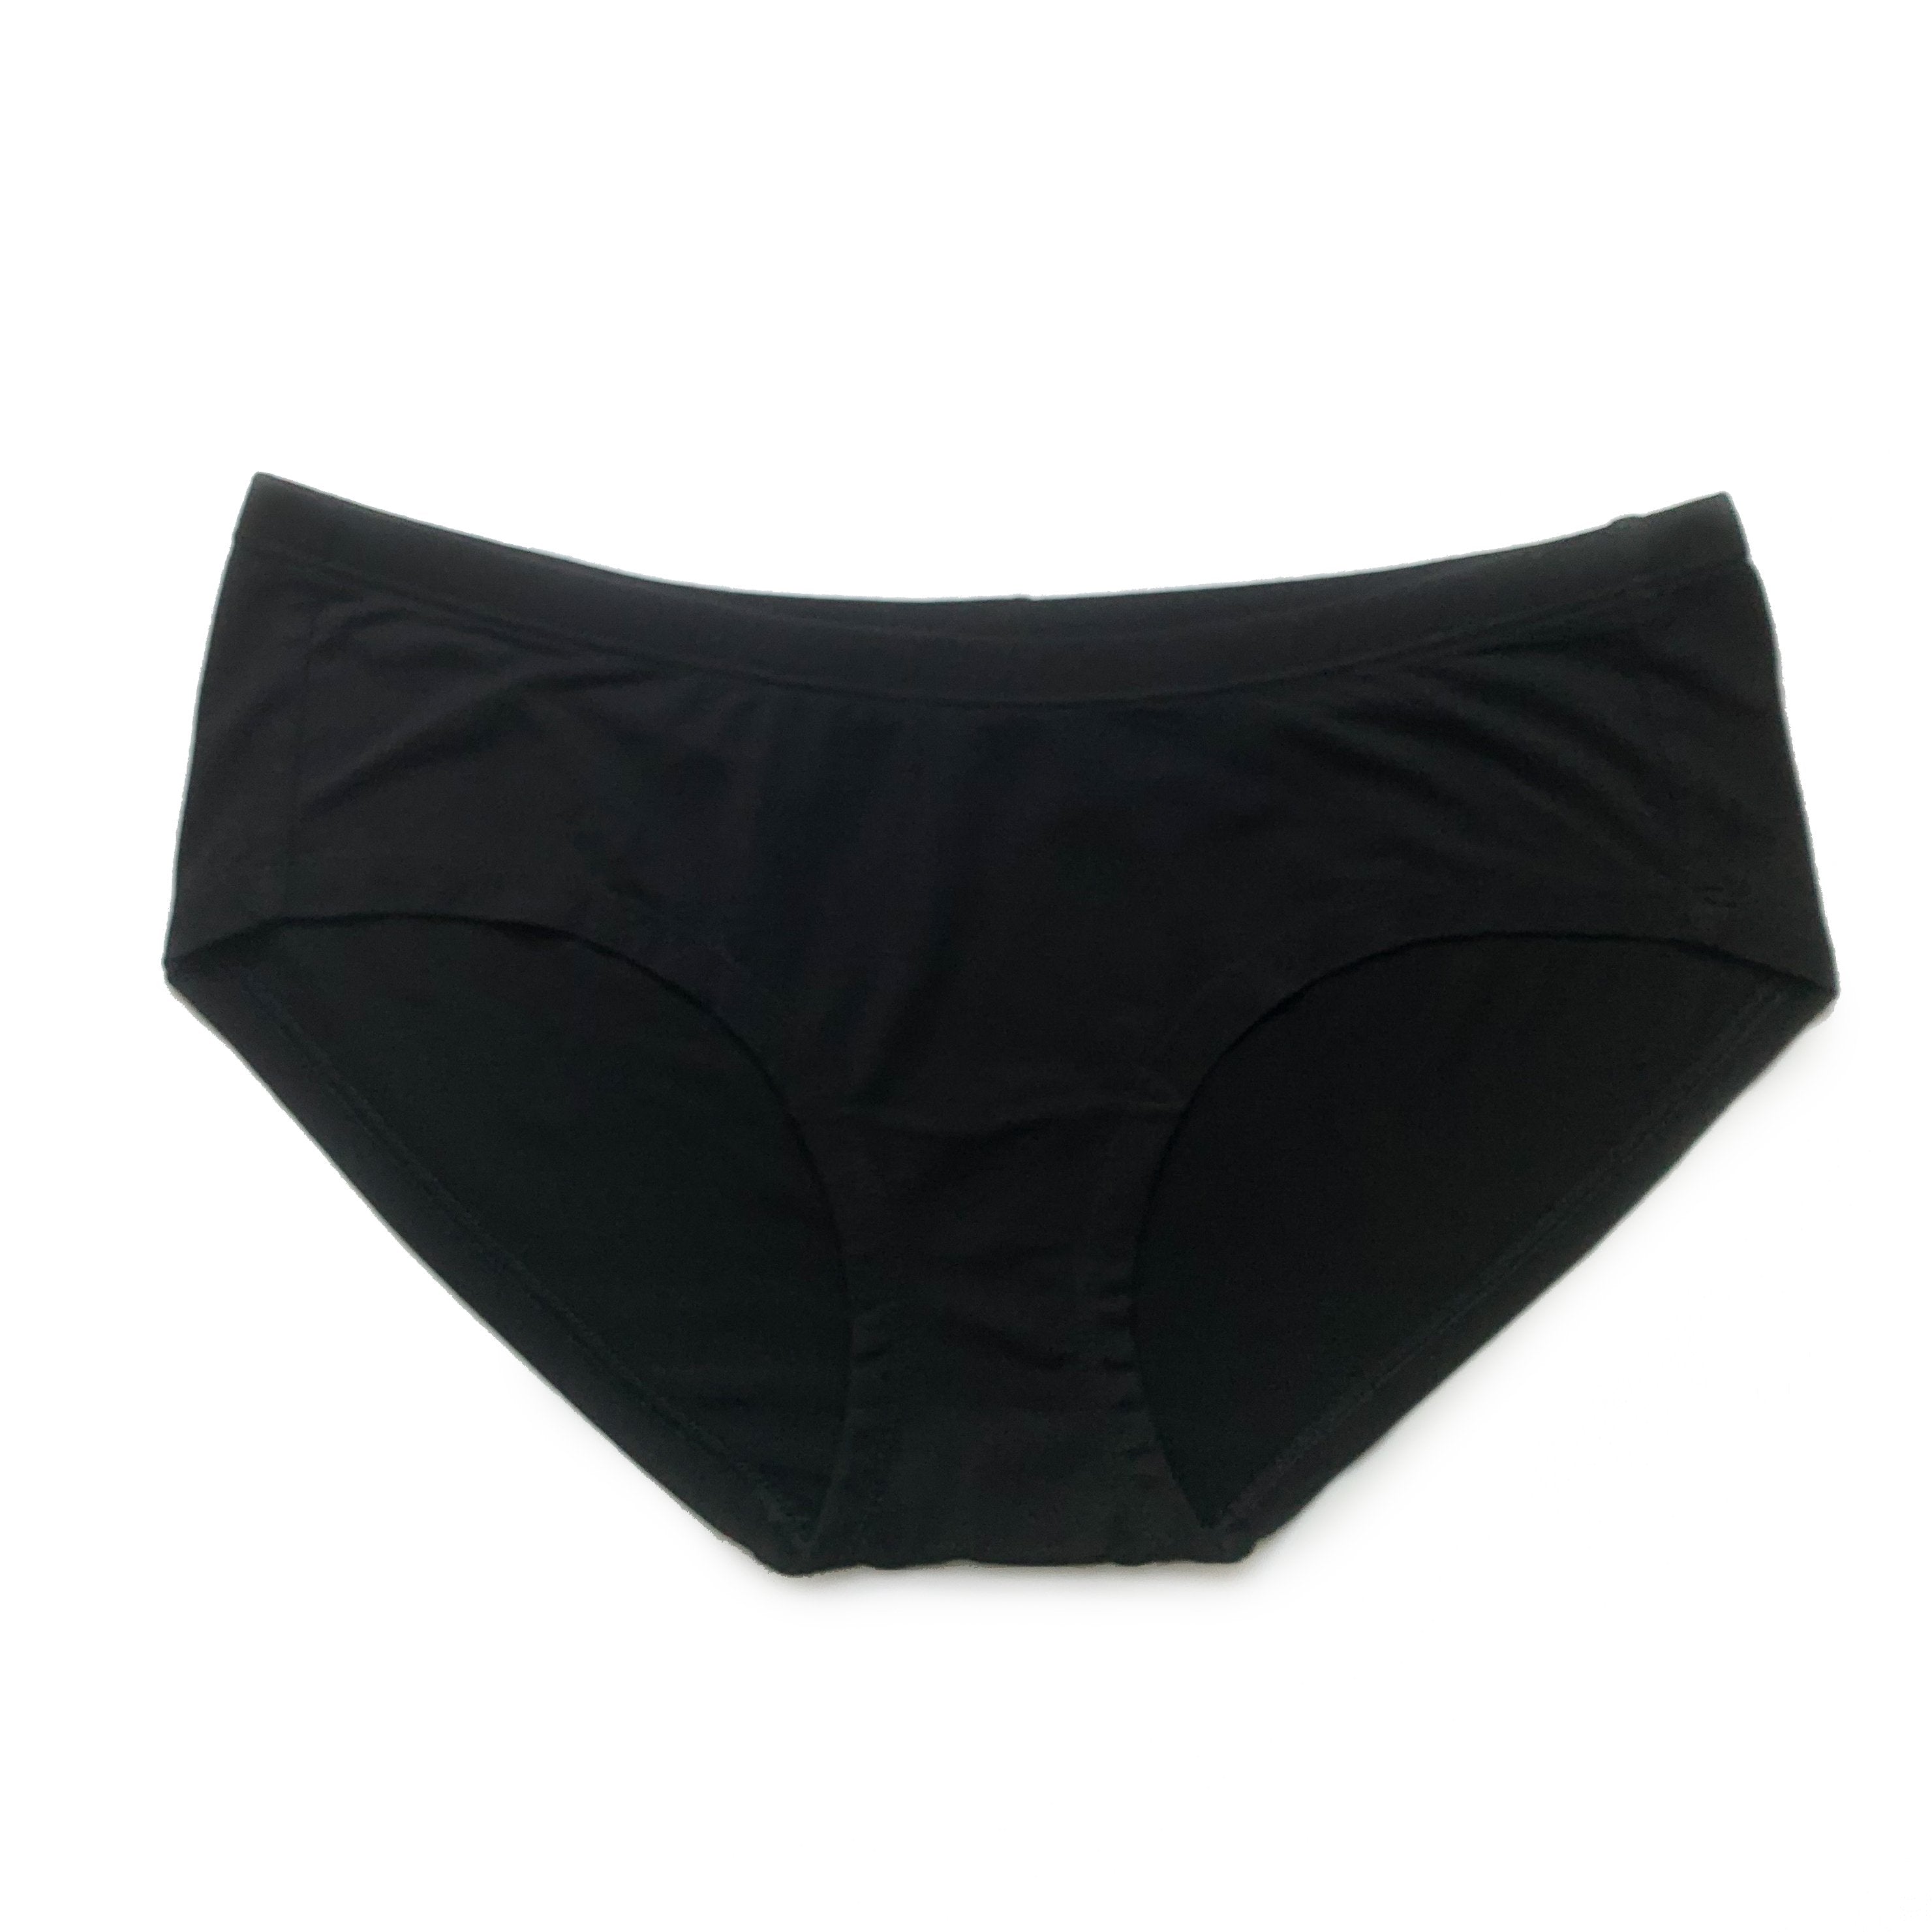 https://littlesleepies.com/cdn/shop/products/women-s-pjs-women-s-bamboo-viscose-hipster-underwear-2.jpg?v=1621374160